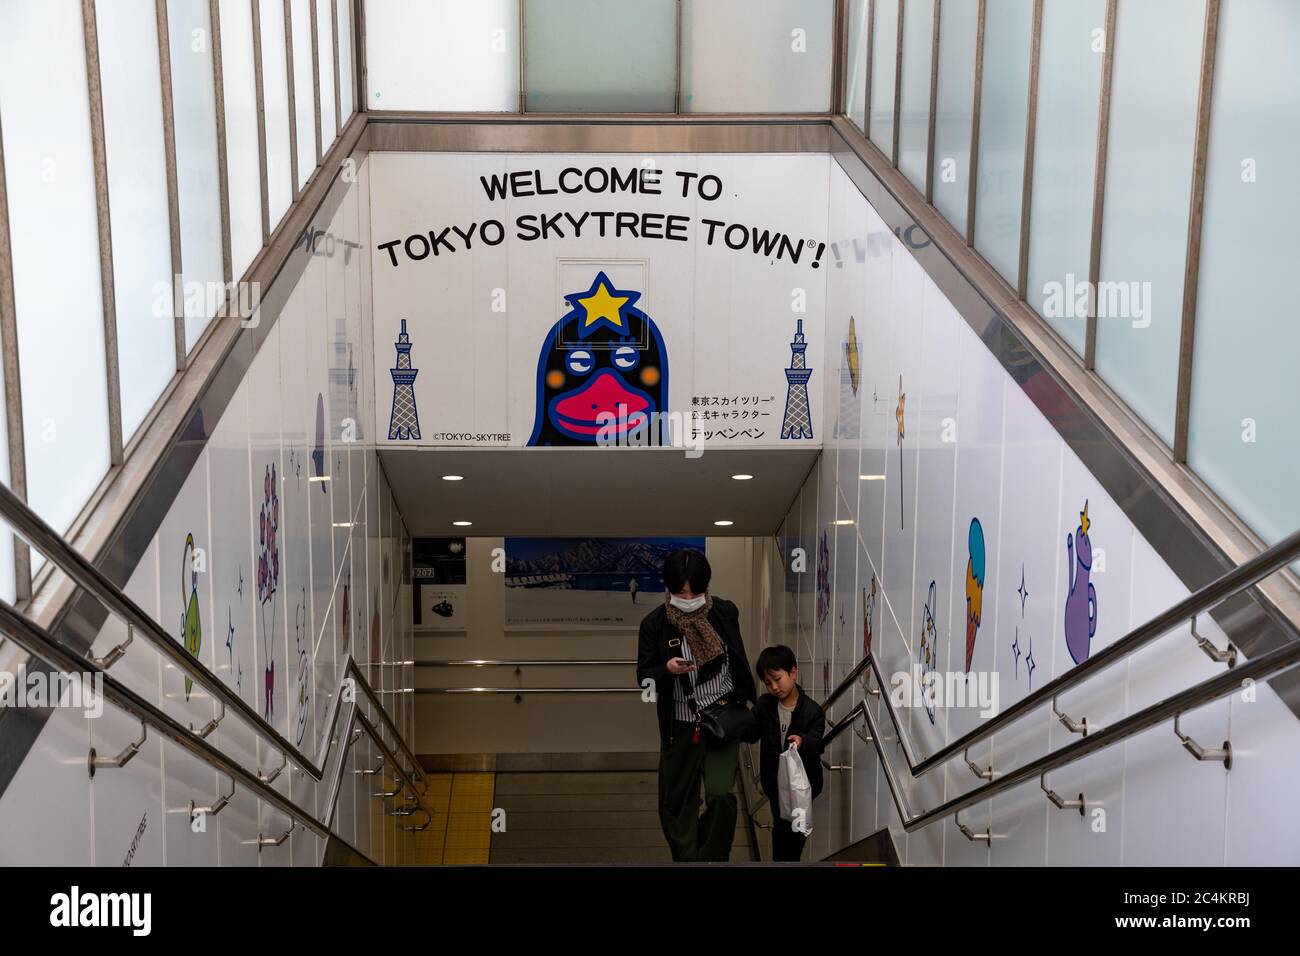 Treppen an der Tokyo Skytree Station (Tobu Linie) mit einer lustigen Werbung, die Sie in der Shopping Mall namens 'Tokyo Skytree Town' willkommen heißt. Tokio, Japan. Stockfoto